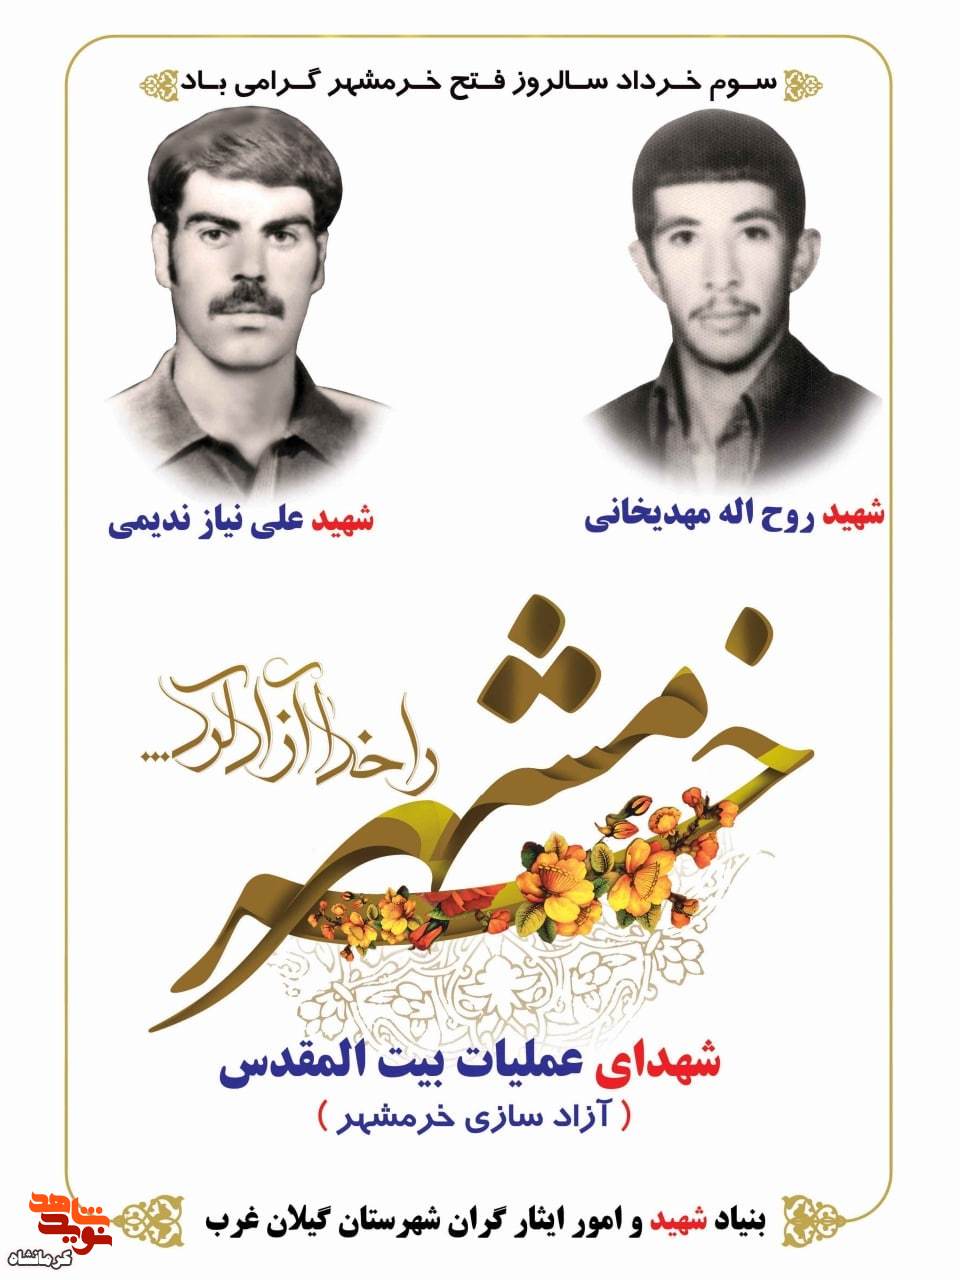 پوستر/ معرفی دو شهید گیلانغربی در عملیات بیت المقدس